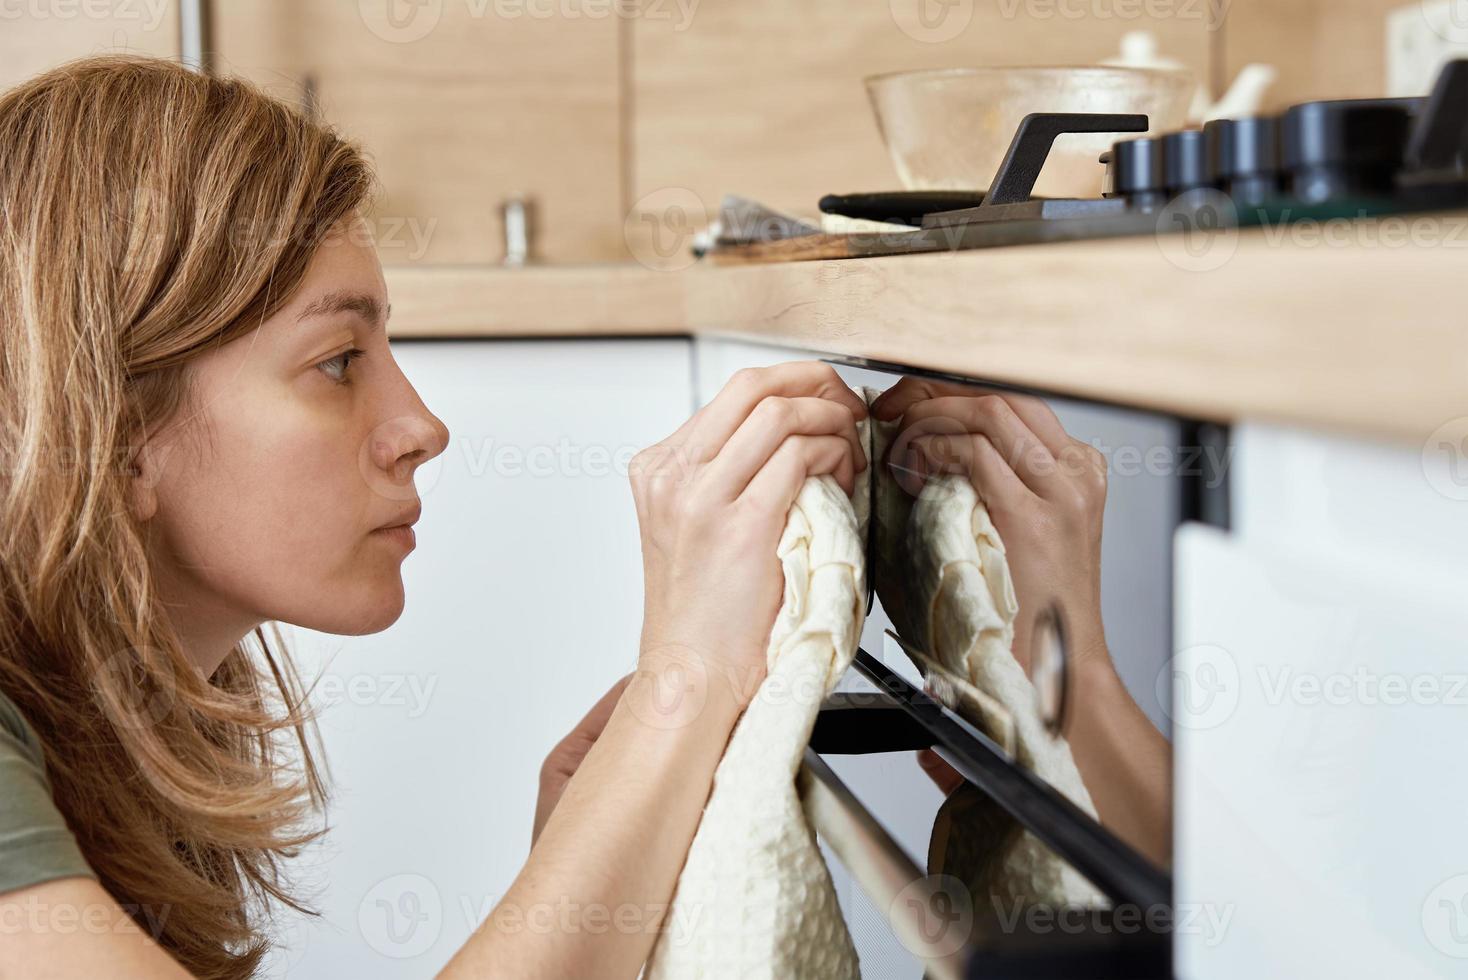 vrouw schoonmaak elektrisch oven in keuken foto